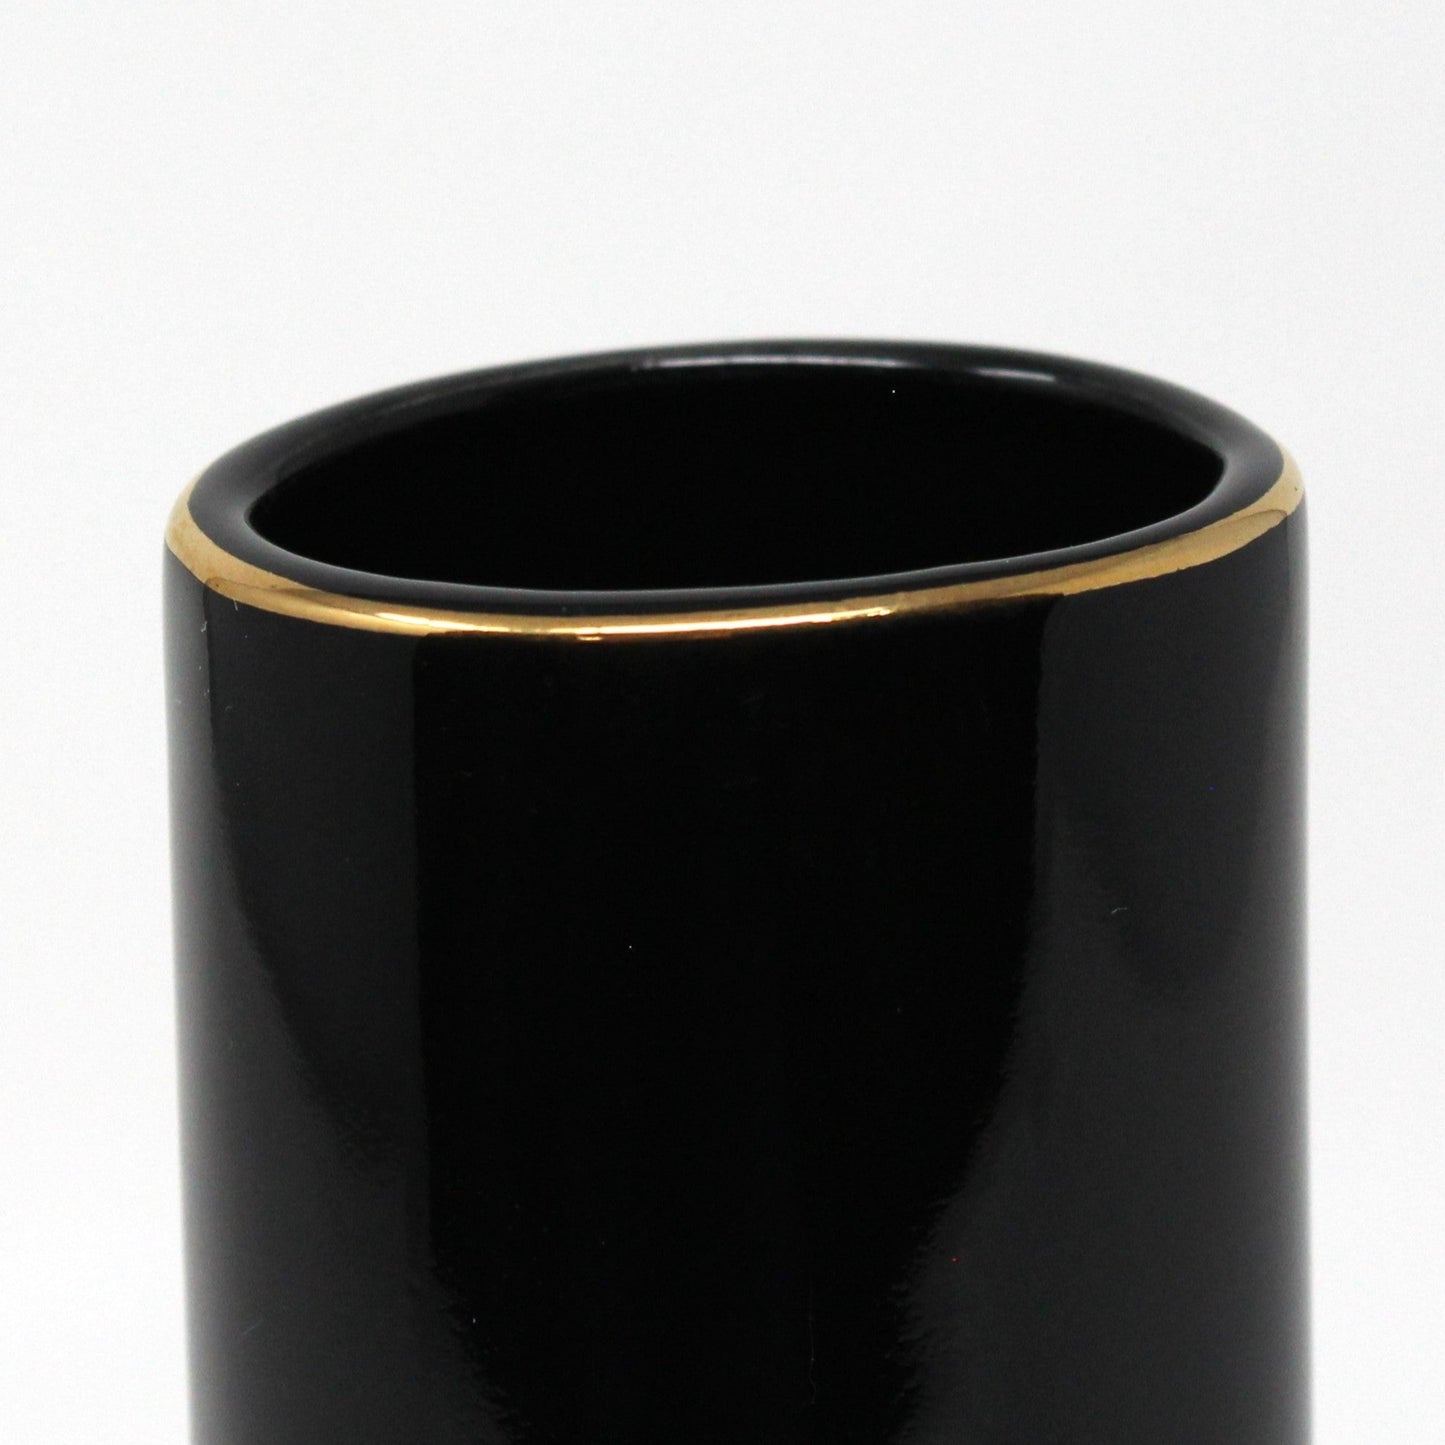 Vase, Otagiri, Black Vase with Golden Sea Shells, Japan Porcelain, Vintage